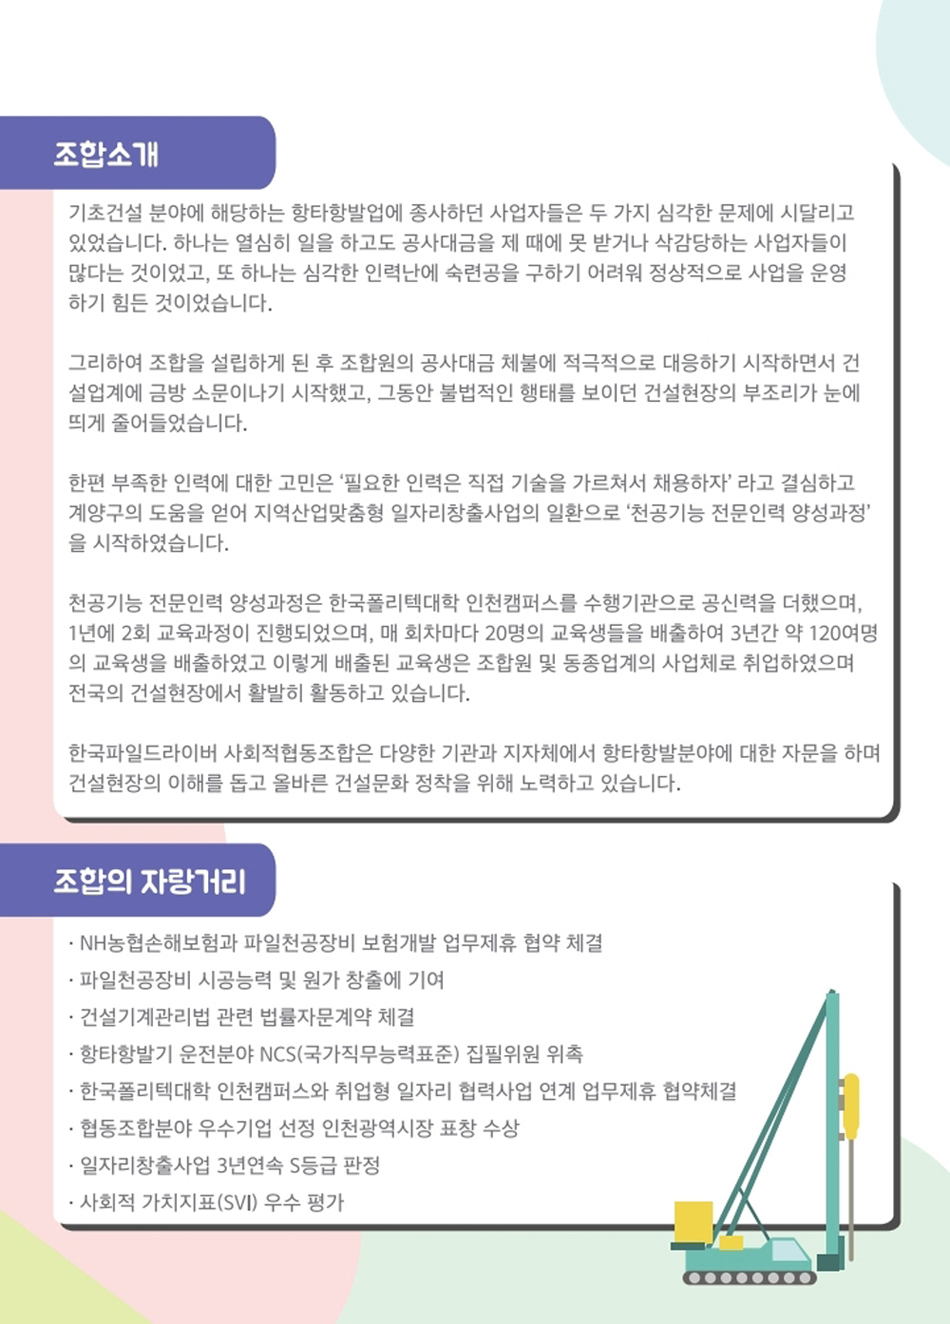 한국파일드라이버 사회적협동조합 조합소개